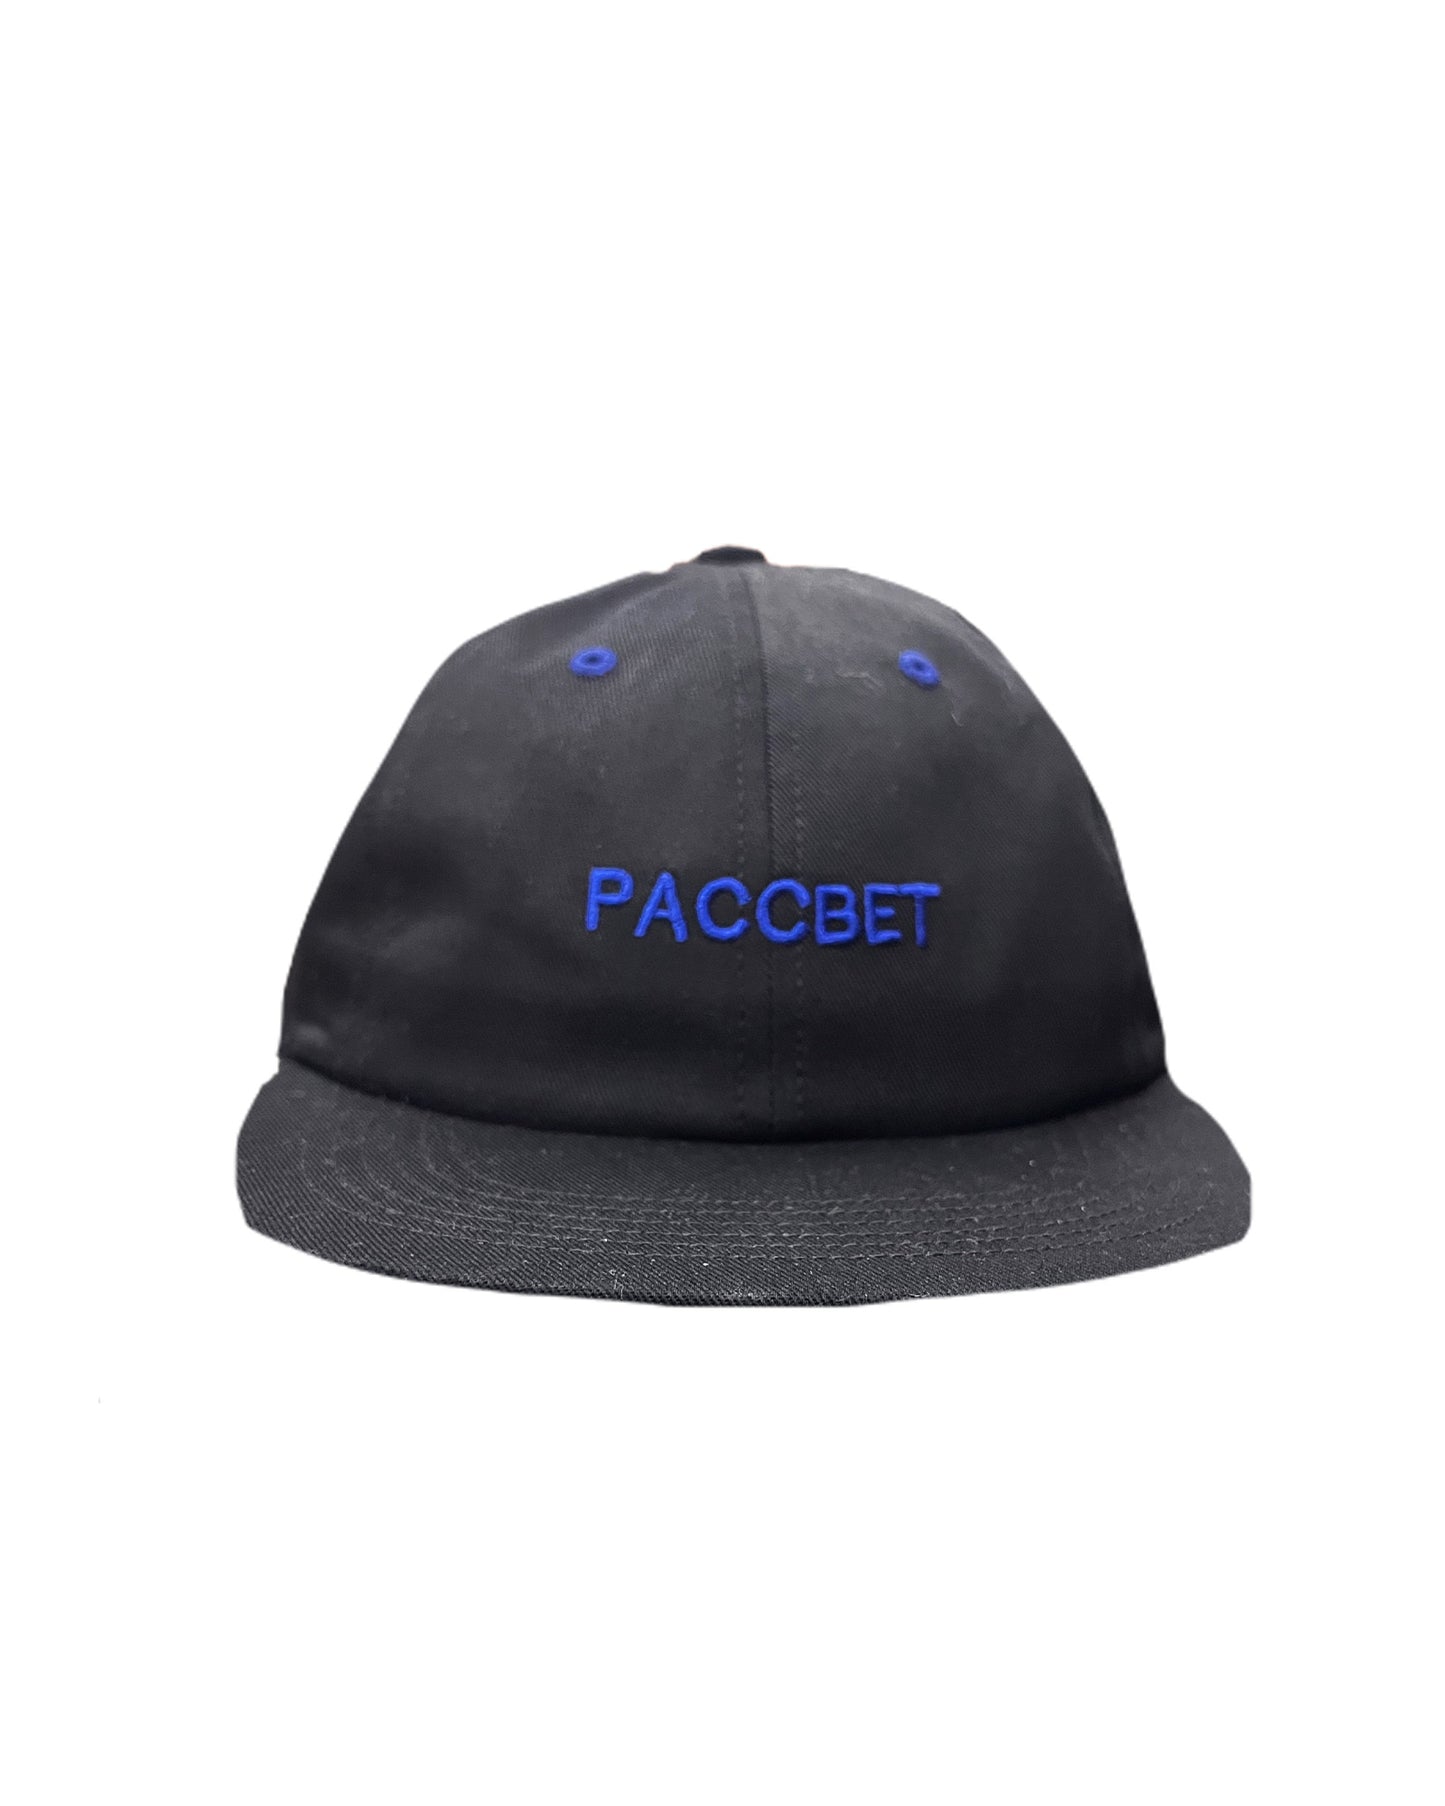 男式 6 片式 pacbet 编织帽